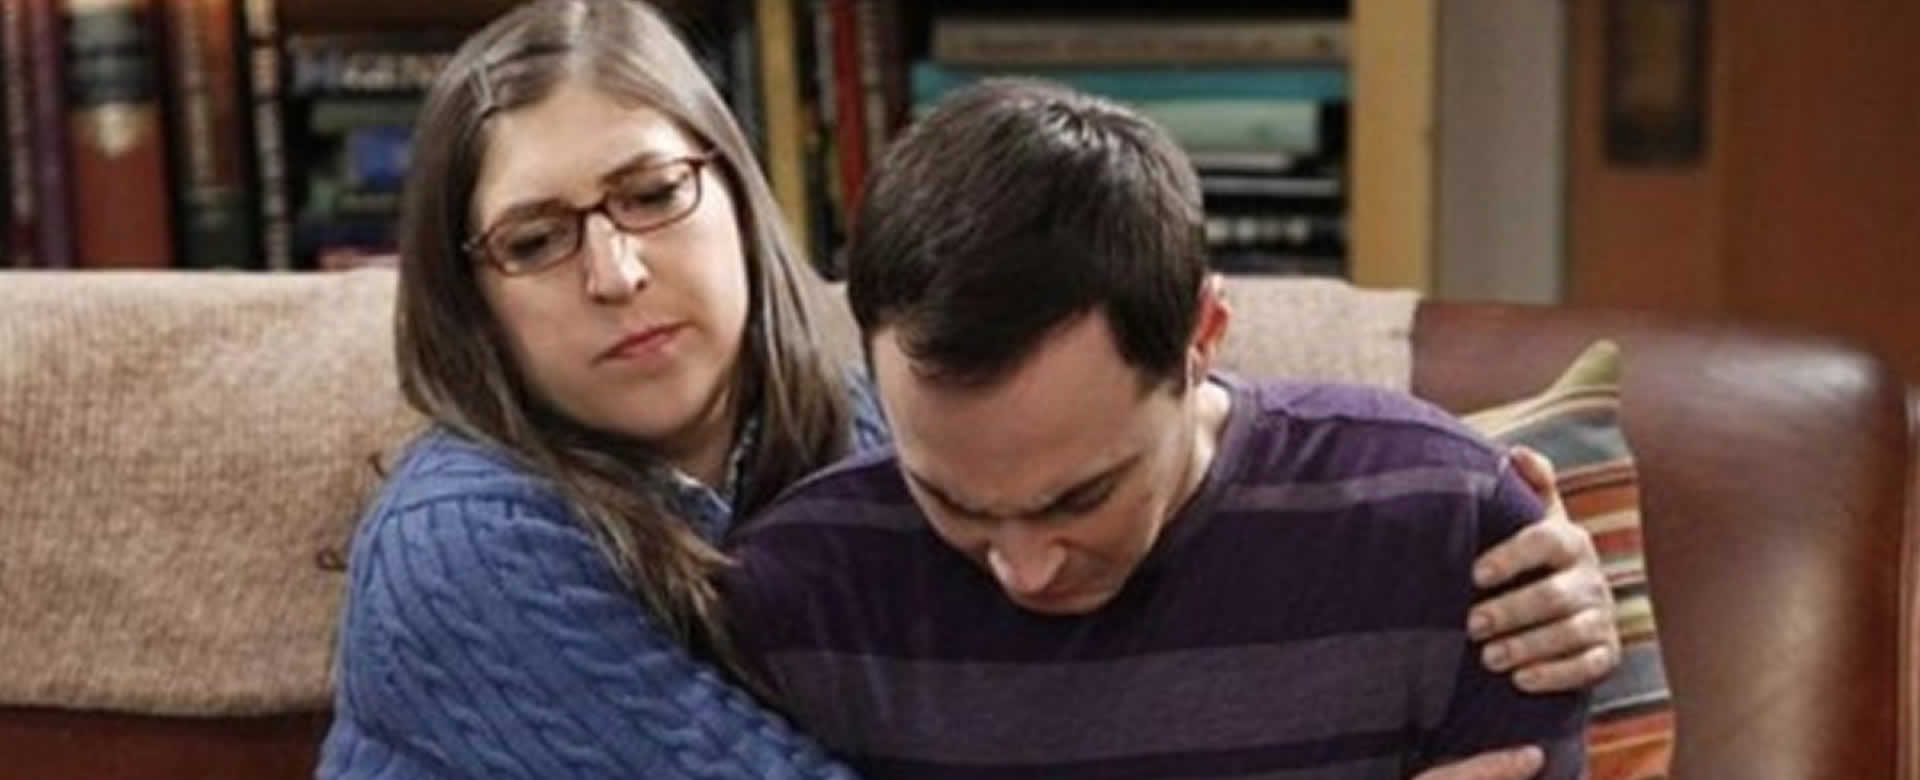 El síndrome de Estocolmo cierra el trama del Tráiler final "The Big Bang Theory"